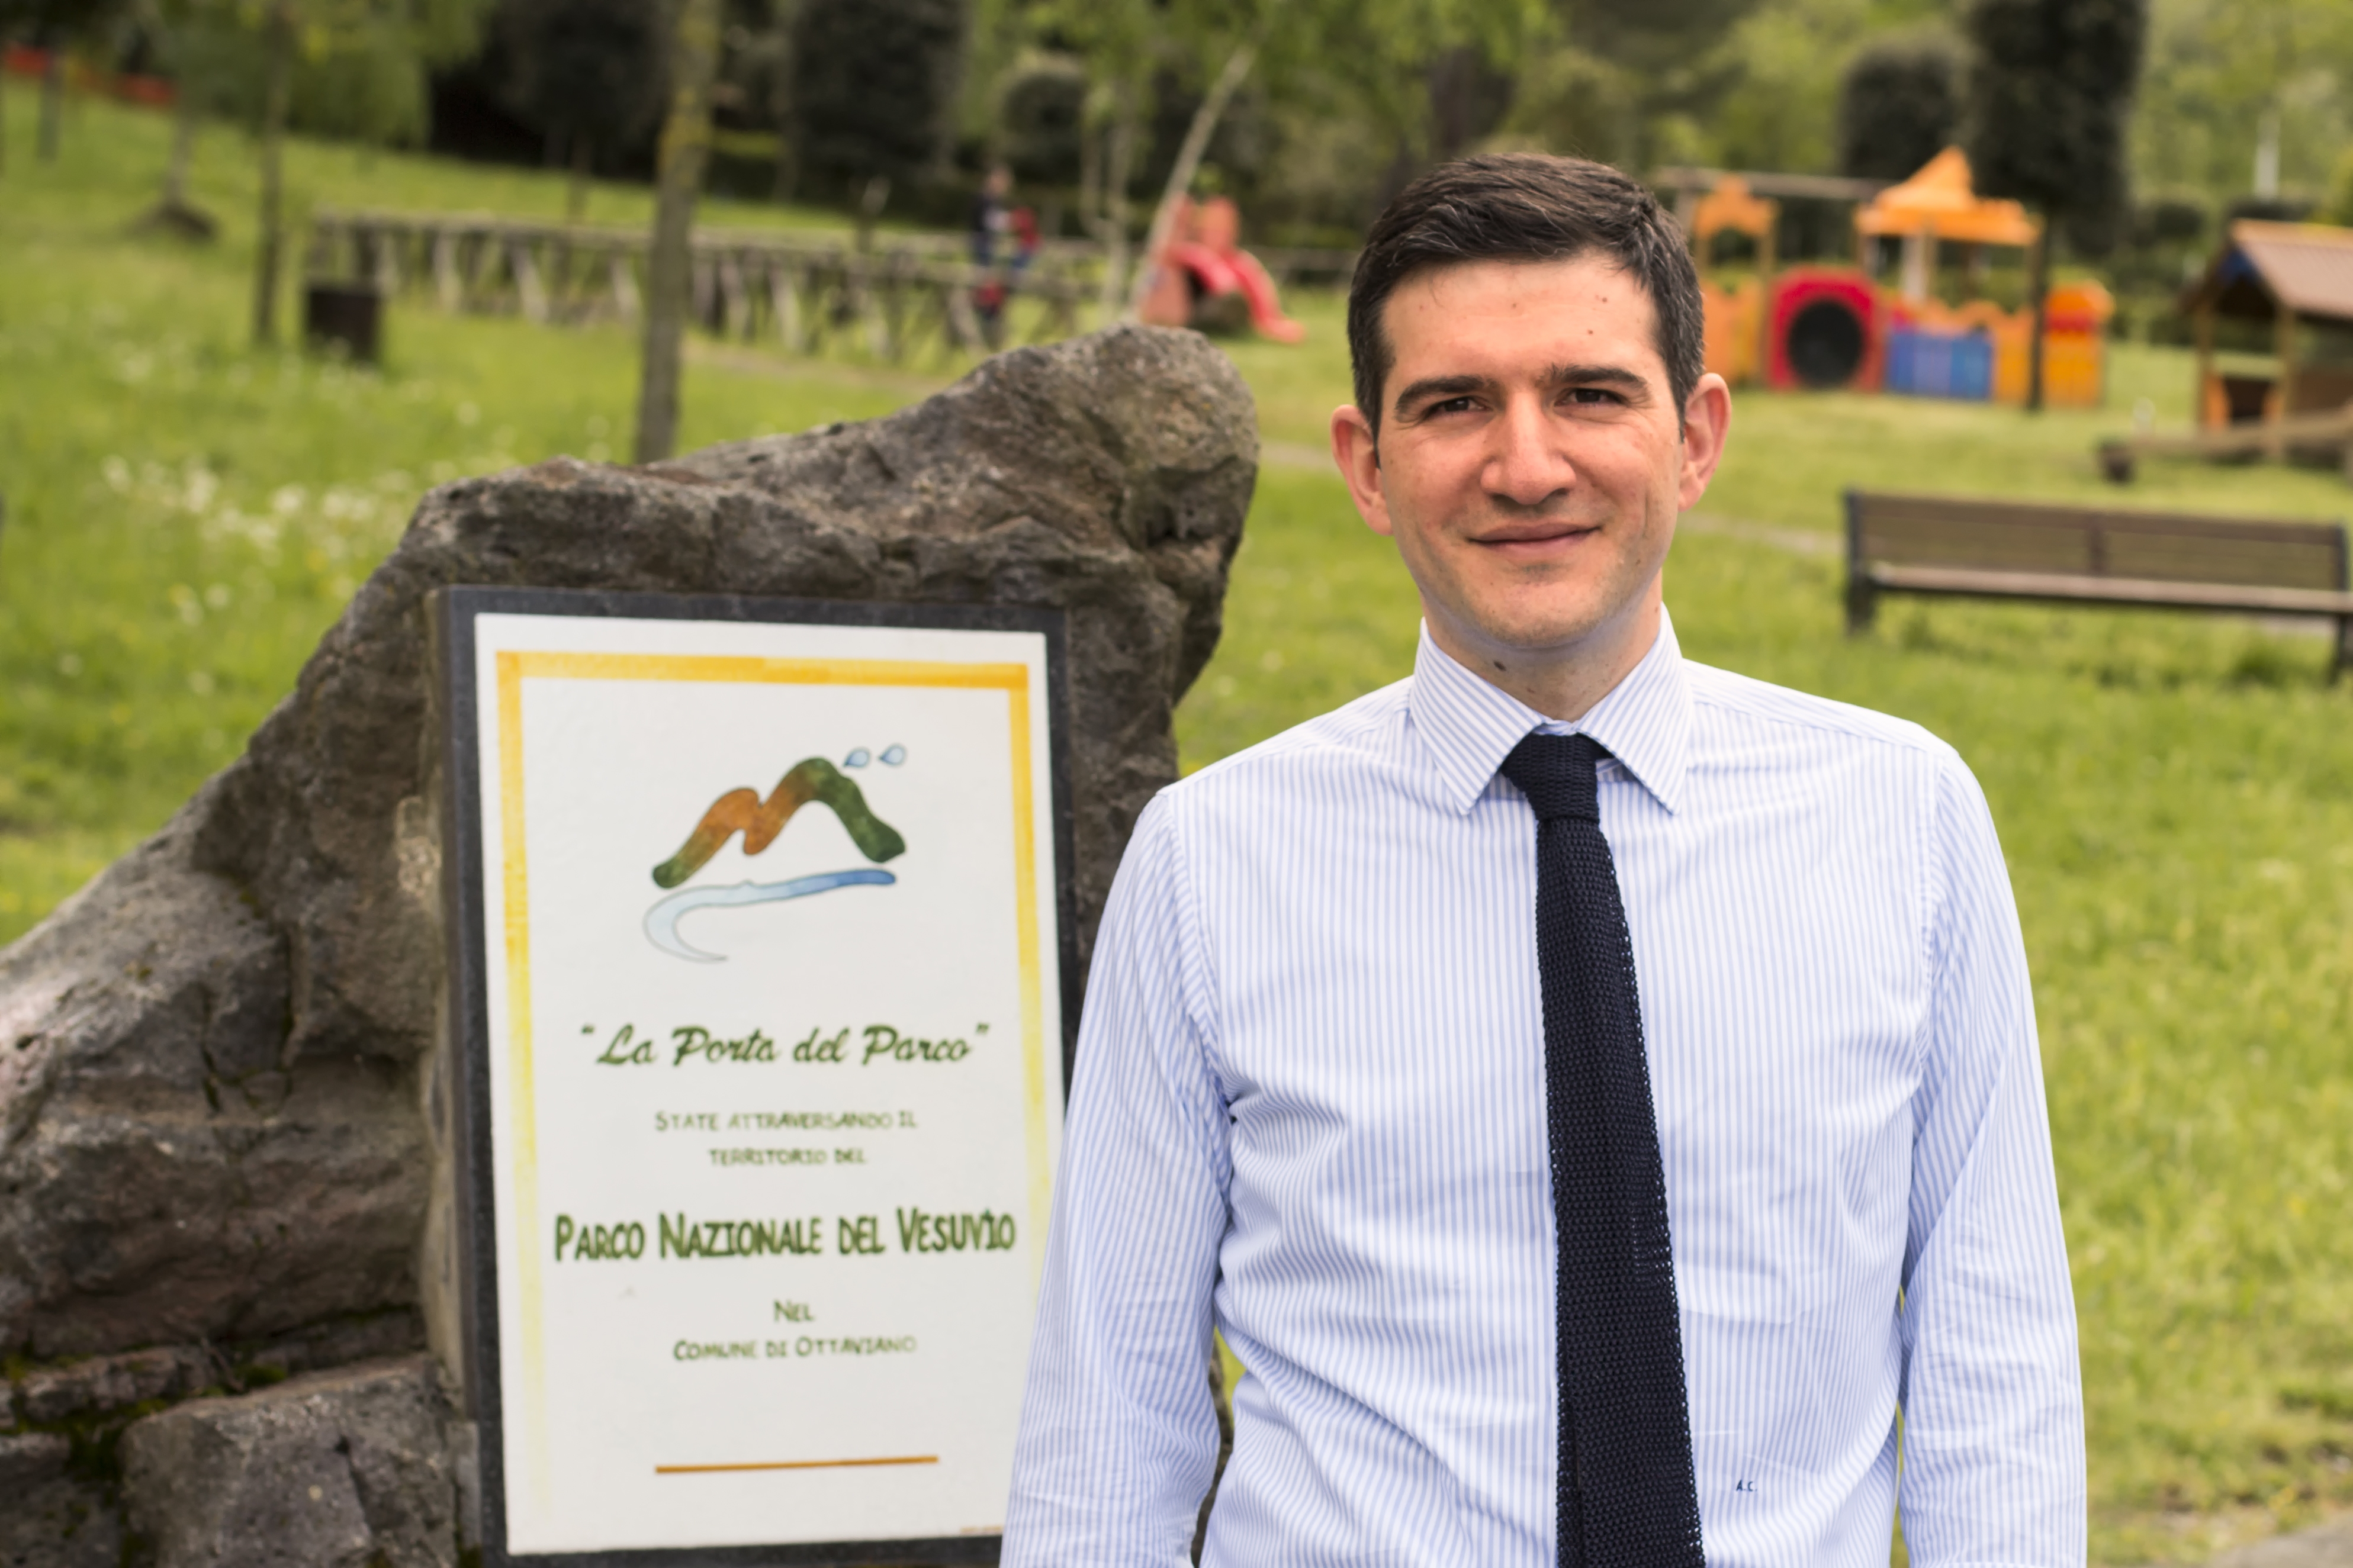 Nasce la Rete delle scuole del Parco Nazionale del Vesuvio, firmata la convenzione con la Presidenza